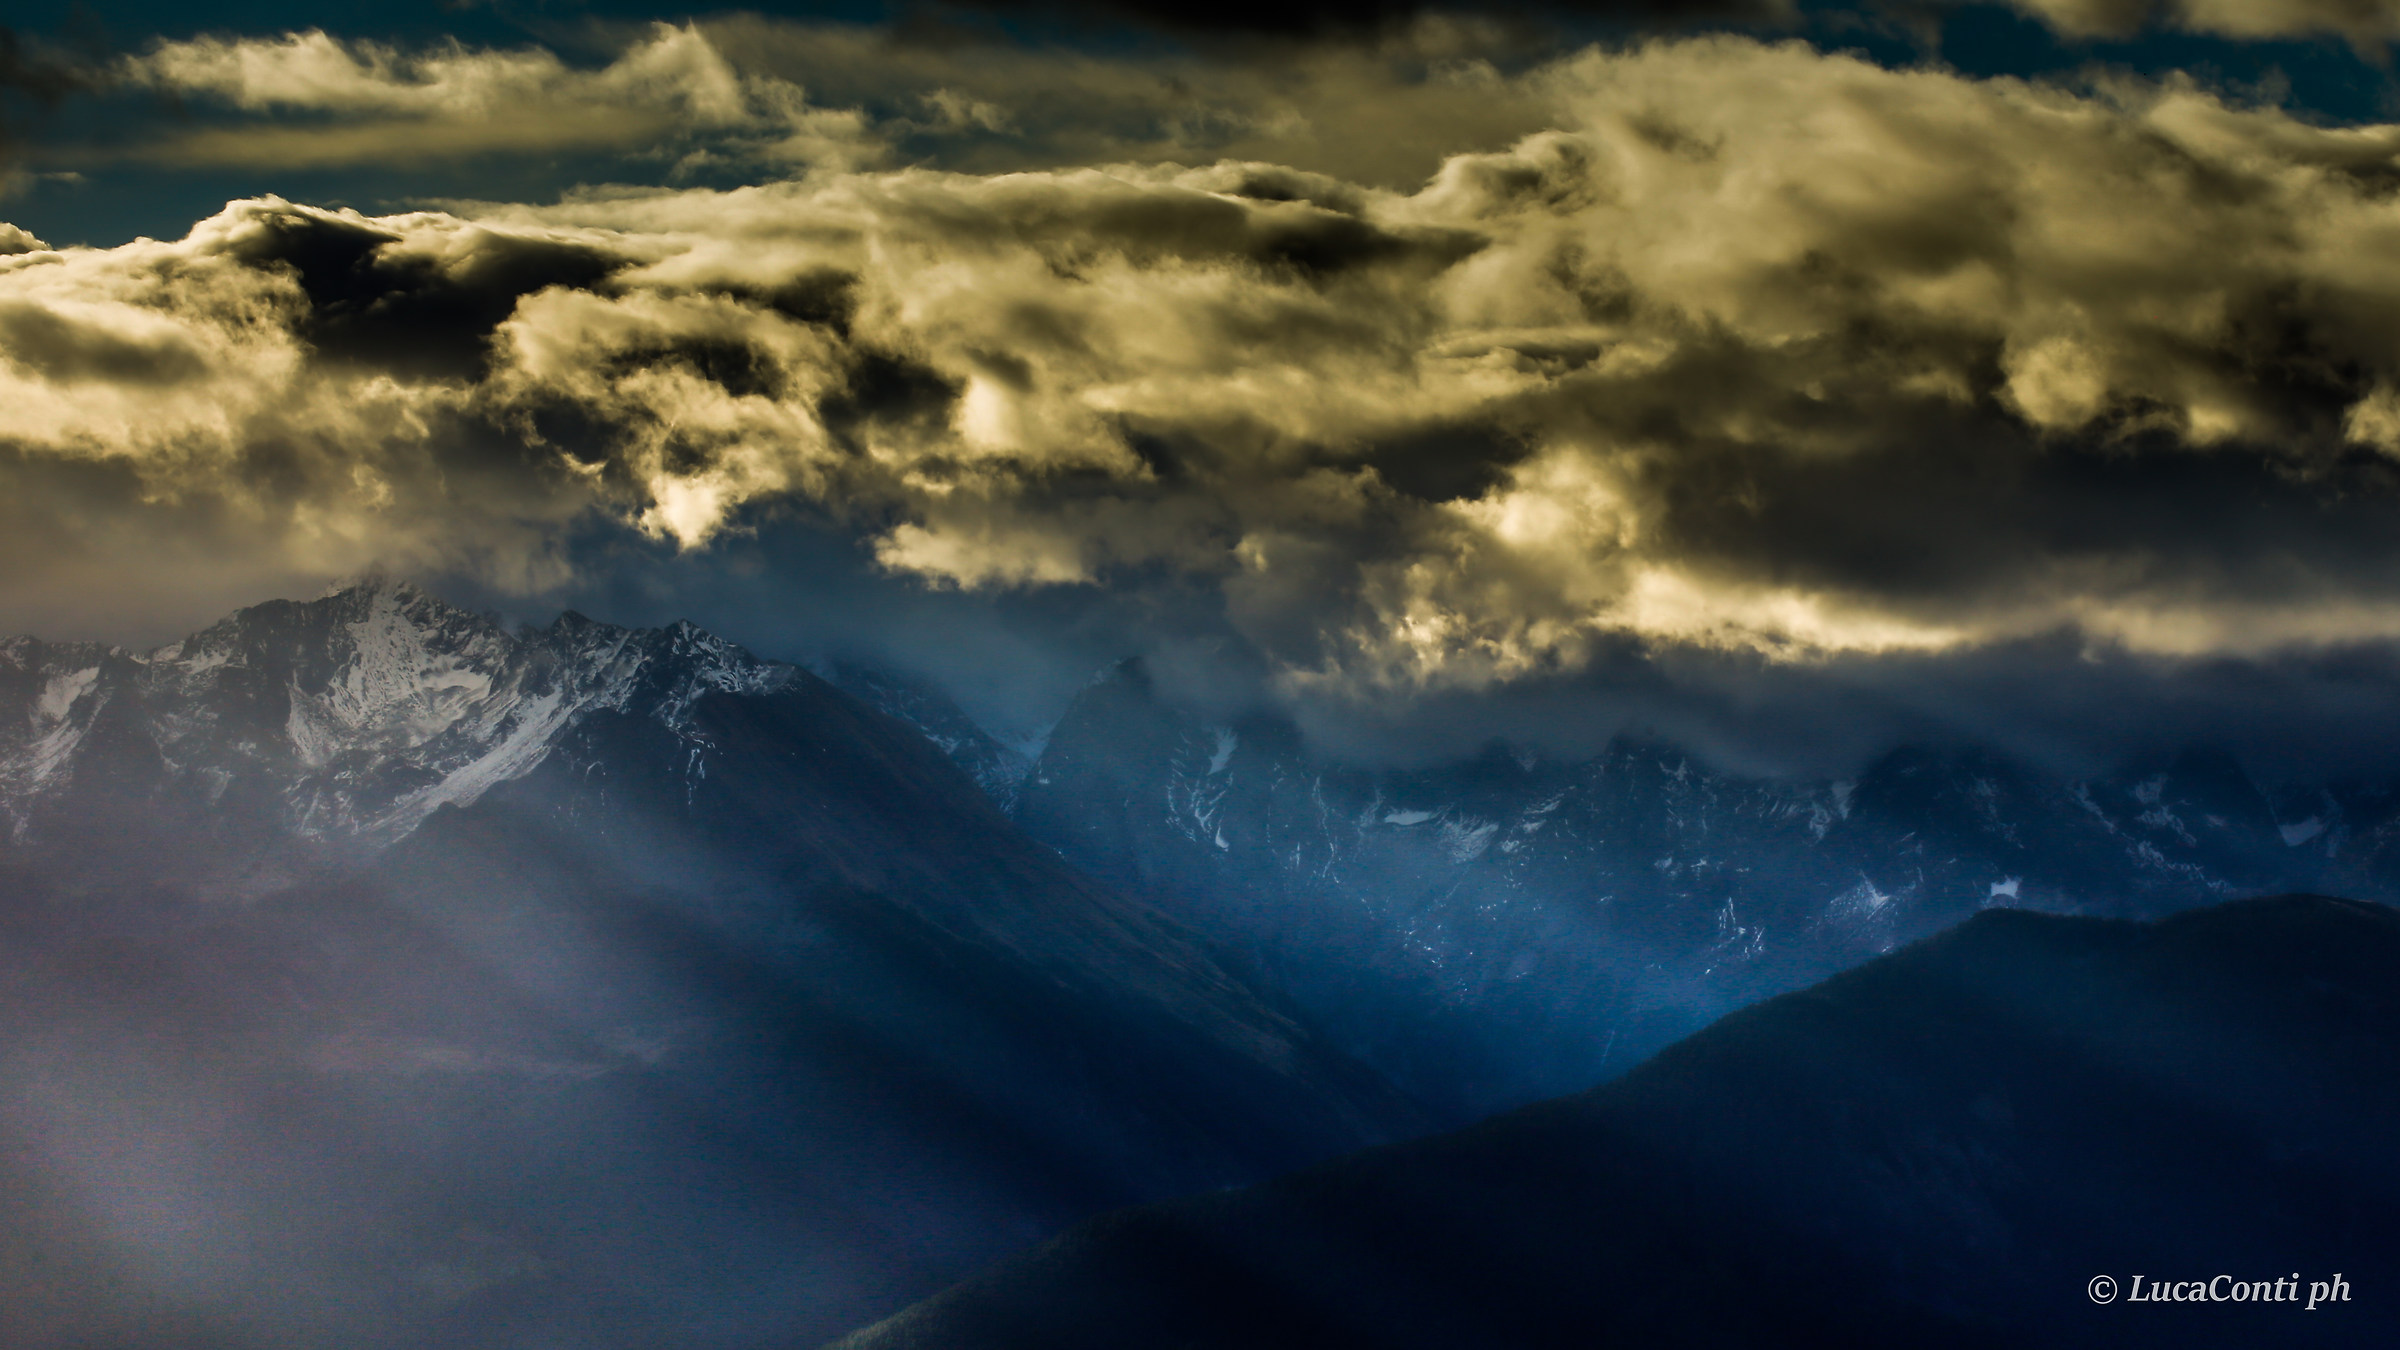 Valtellina , Autunno, insieme di luci ,nuvole e foschie...